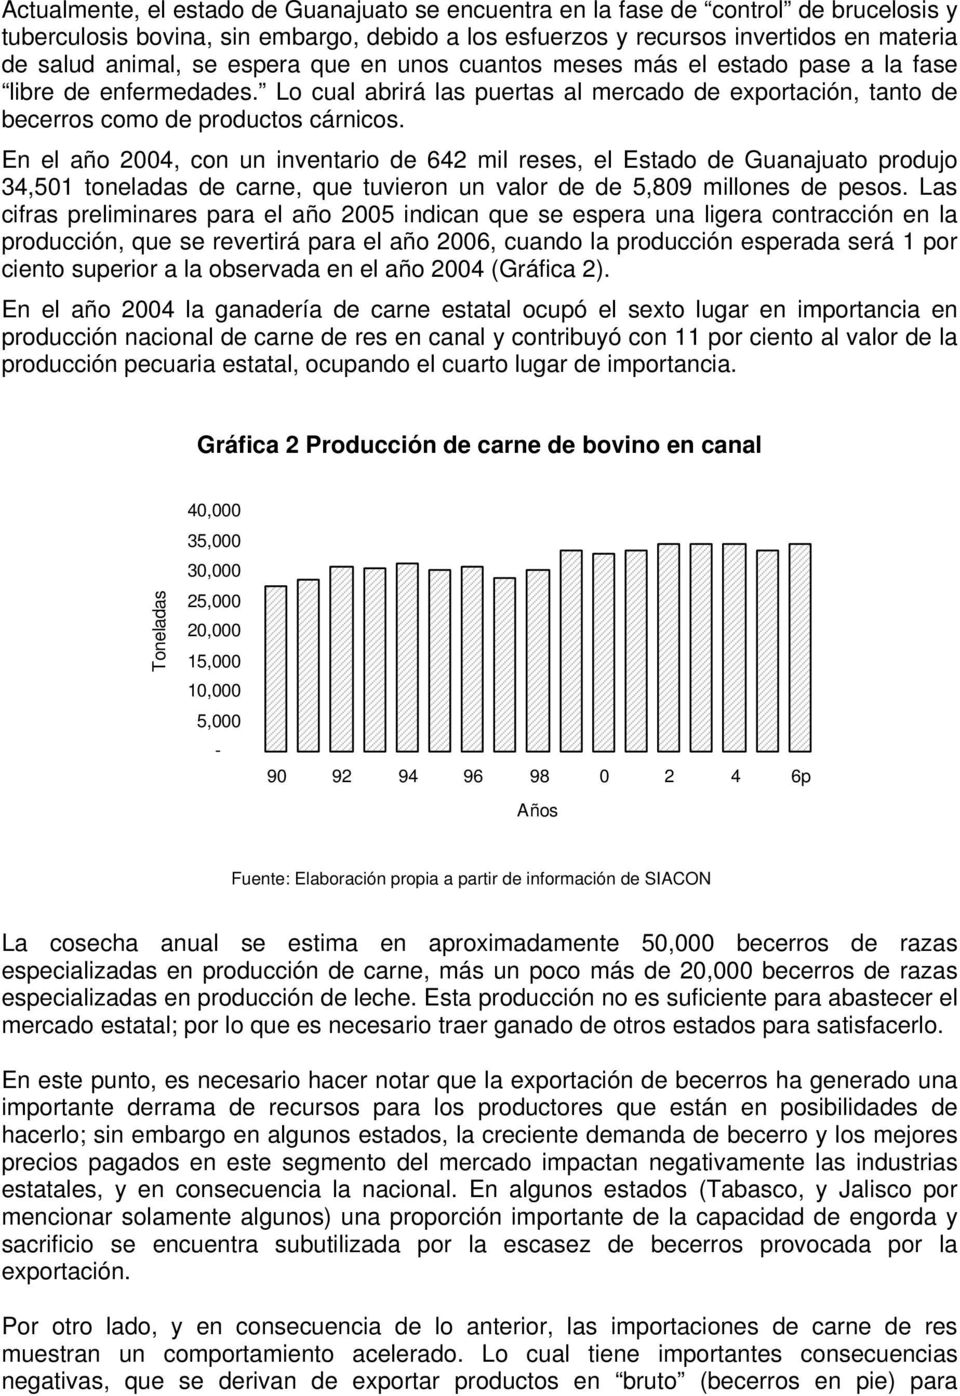 En el año 2004, con un inventario de 642 mil reses, el Estado de Guanajuato produjo 34,501 toneladas de carne, que tuvieron un valor de de 5,809 millones de pesos.